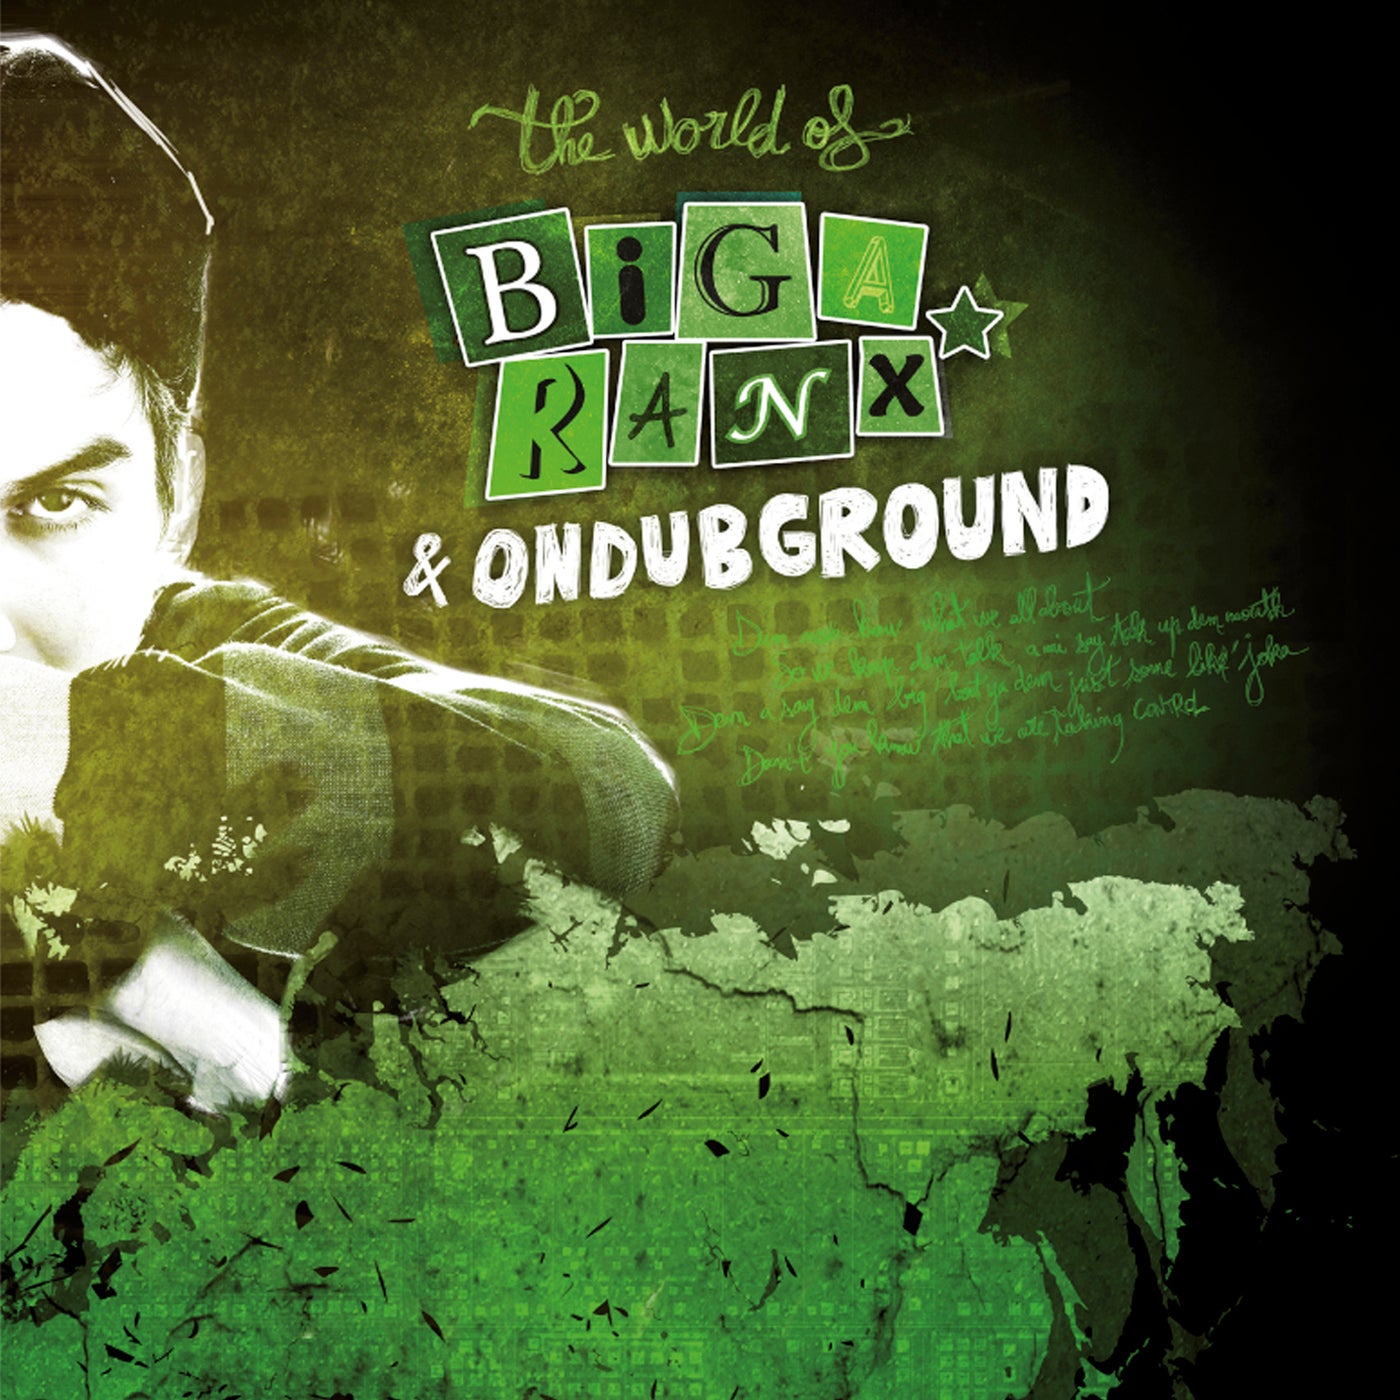 The World of Biga Ranx (The World of Biga Ranx & Ondubground, Vol. 2)